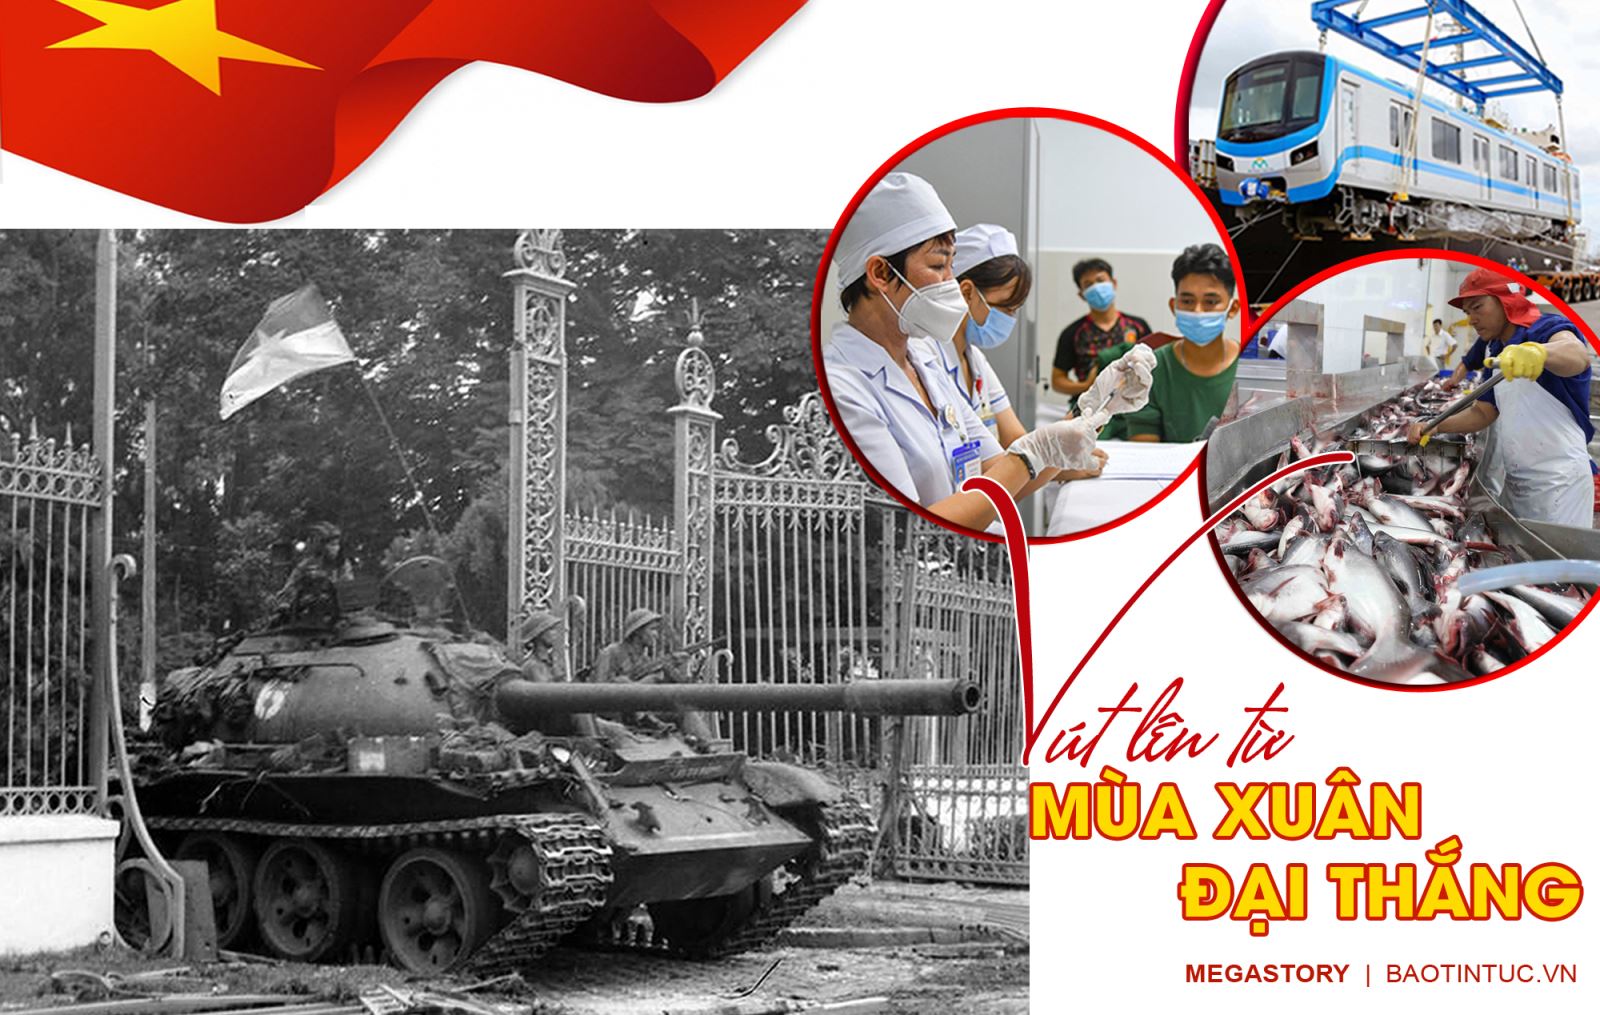 Chiến thắng Mùa Xuân là một chiến công lịch sử, ghi dấu tình yêu quê hương và trách nhiệm quốc gia của người lính Việt Nam. Bằng sự hi sinh, can đảm của người dân và quân đội, Chiến thắng Mùa Xuân đã góp phần giúp Việt Nam trở thành một quốc gia độc lập và phát triển mạnh mẽ.